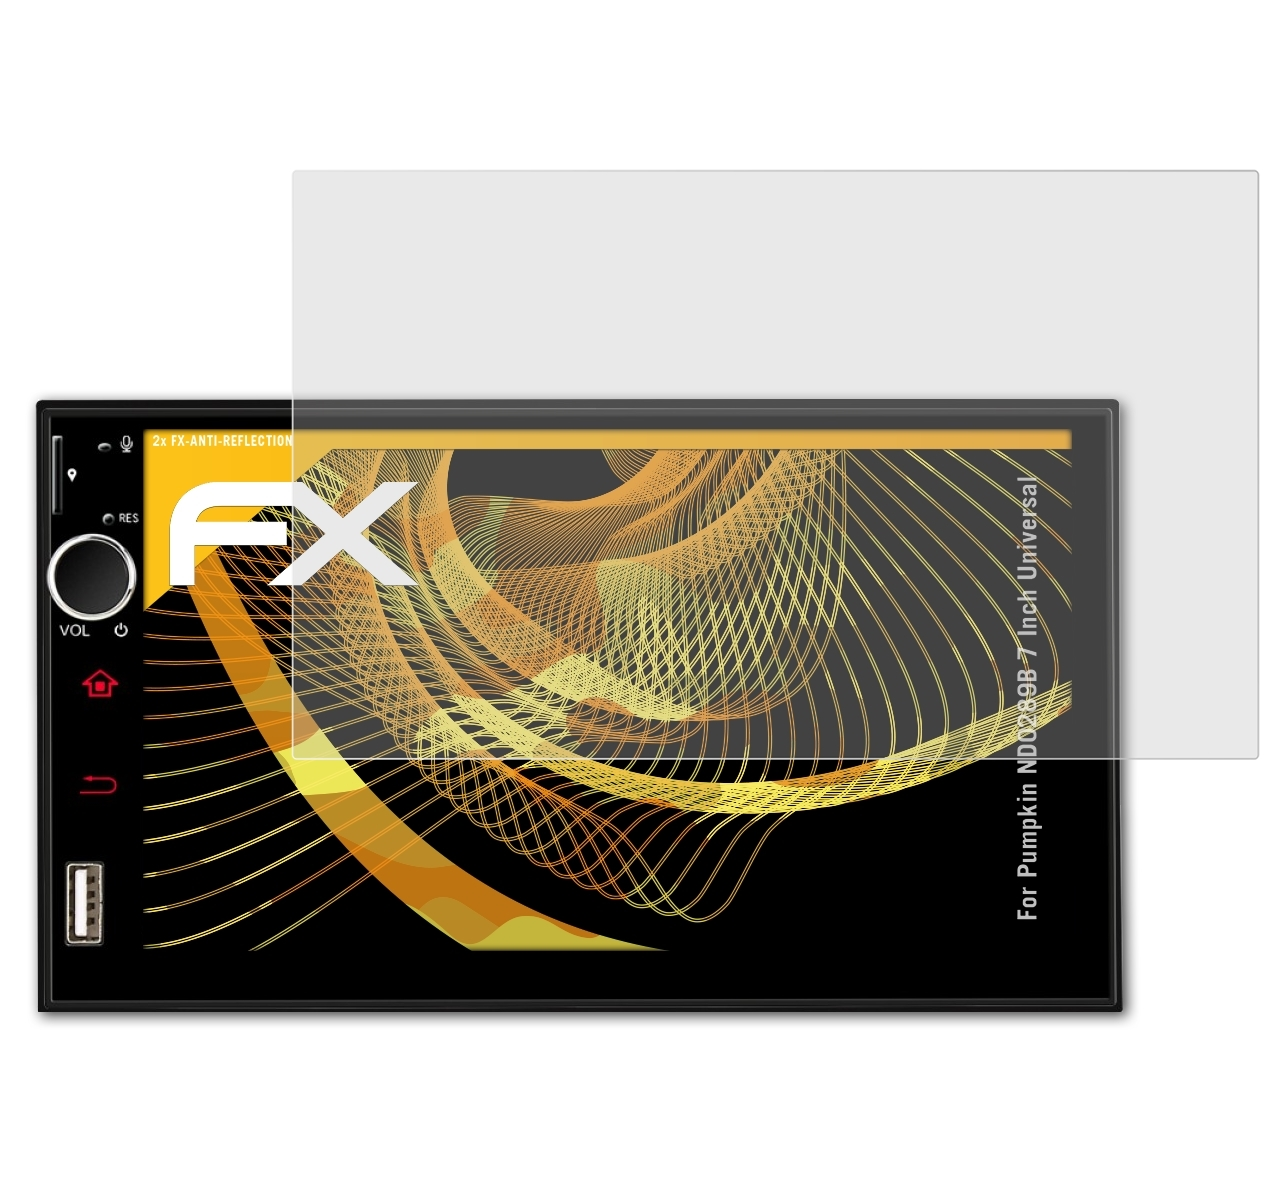 (Universal)) FX-Antireflex Pumpkin 7 ND0289B Inch 2x Displayschutz(für ATFOLIX